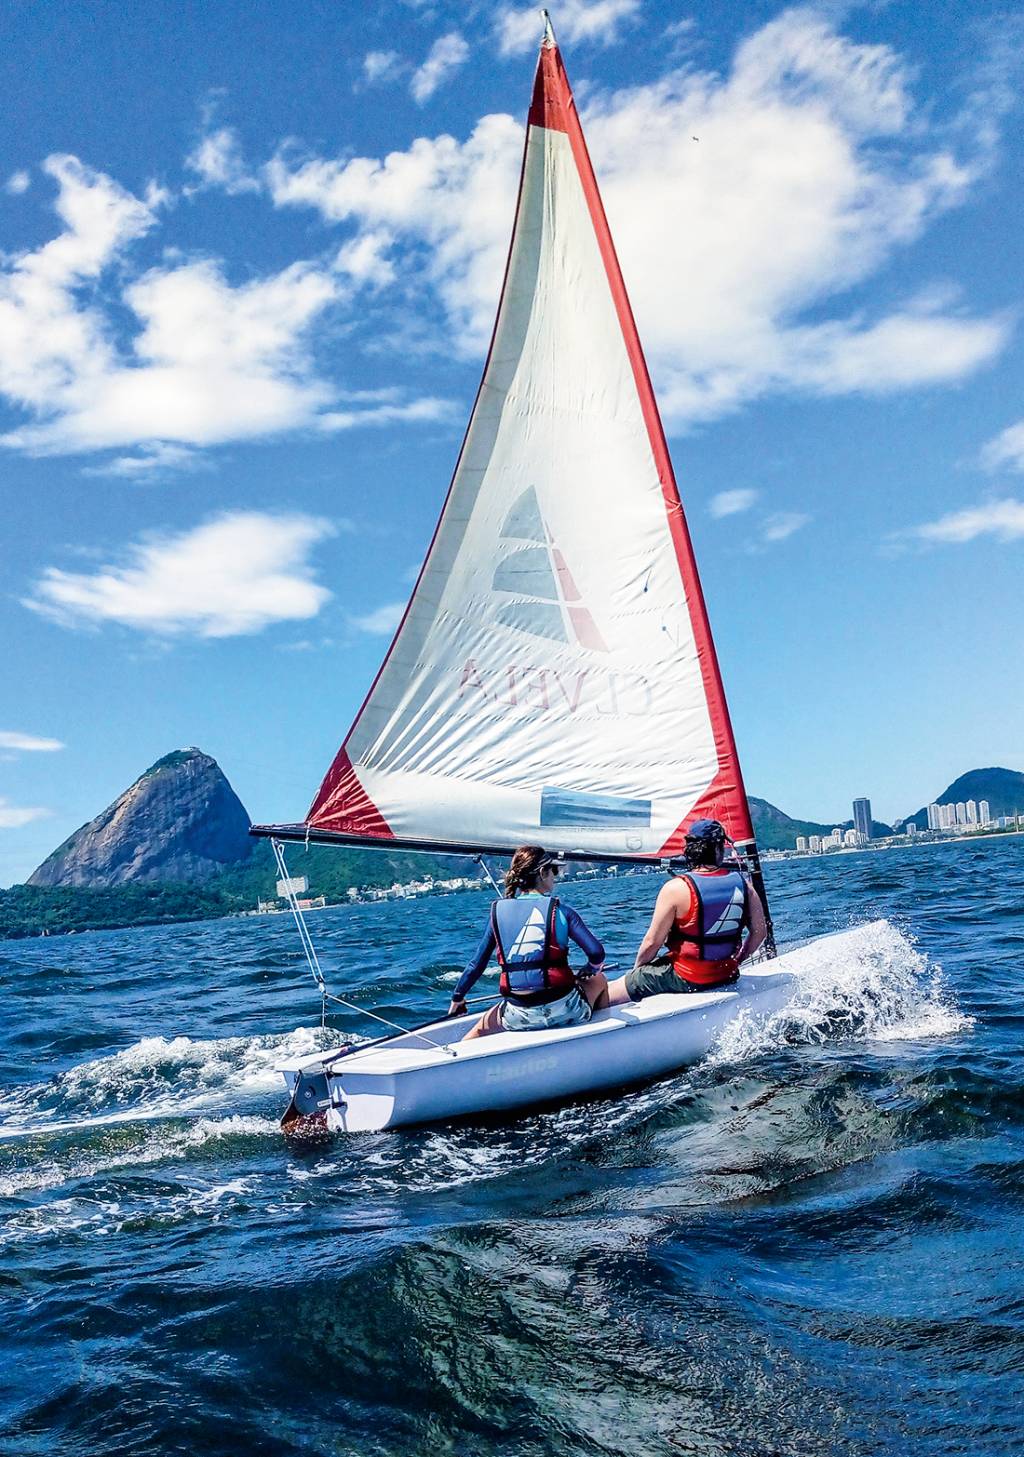 A imagem mostra duas pessoa num dingue, barco a vela, nas águas da Baía de Guanabara